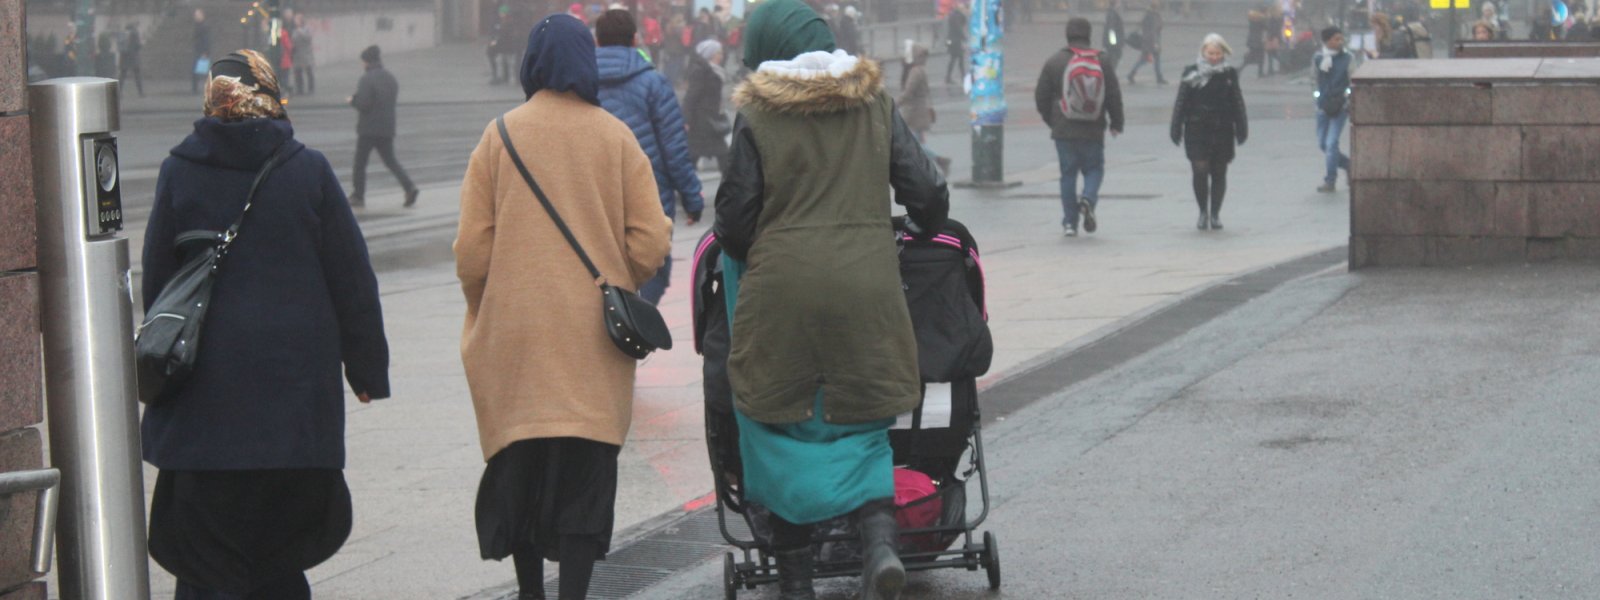 2016 - Kvinner med barnevogn i Oslo